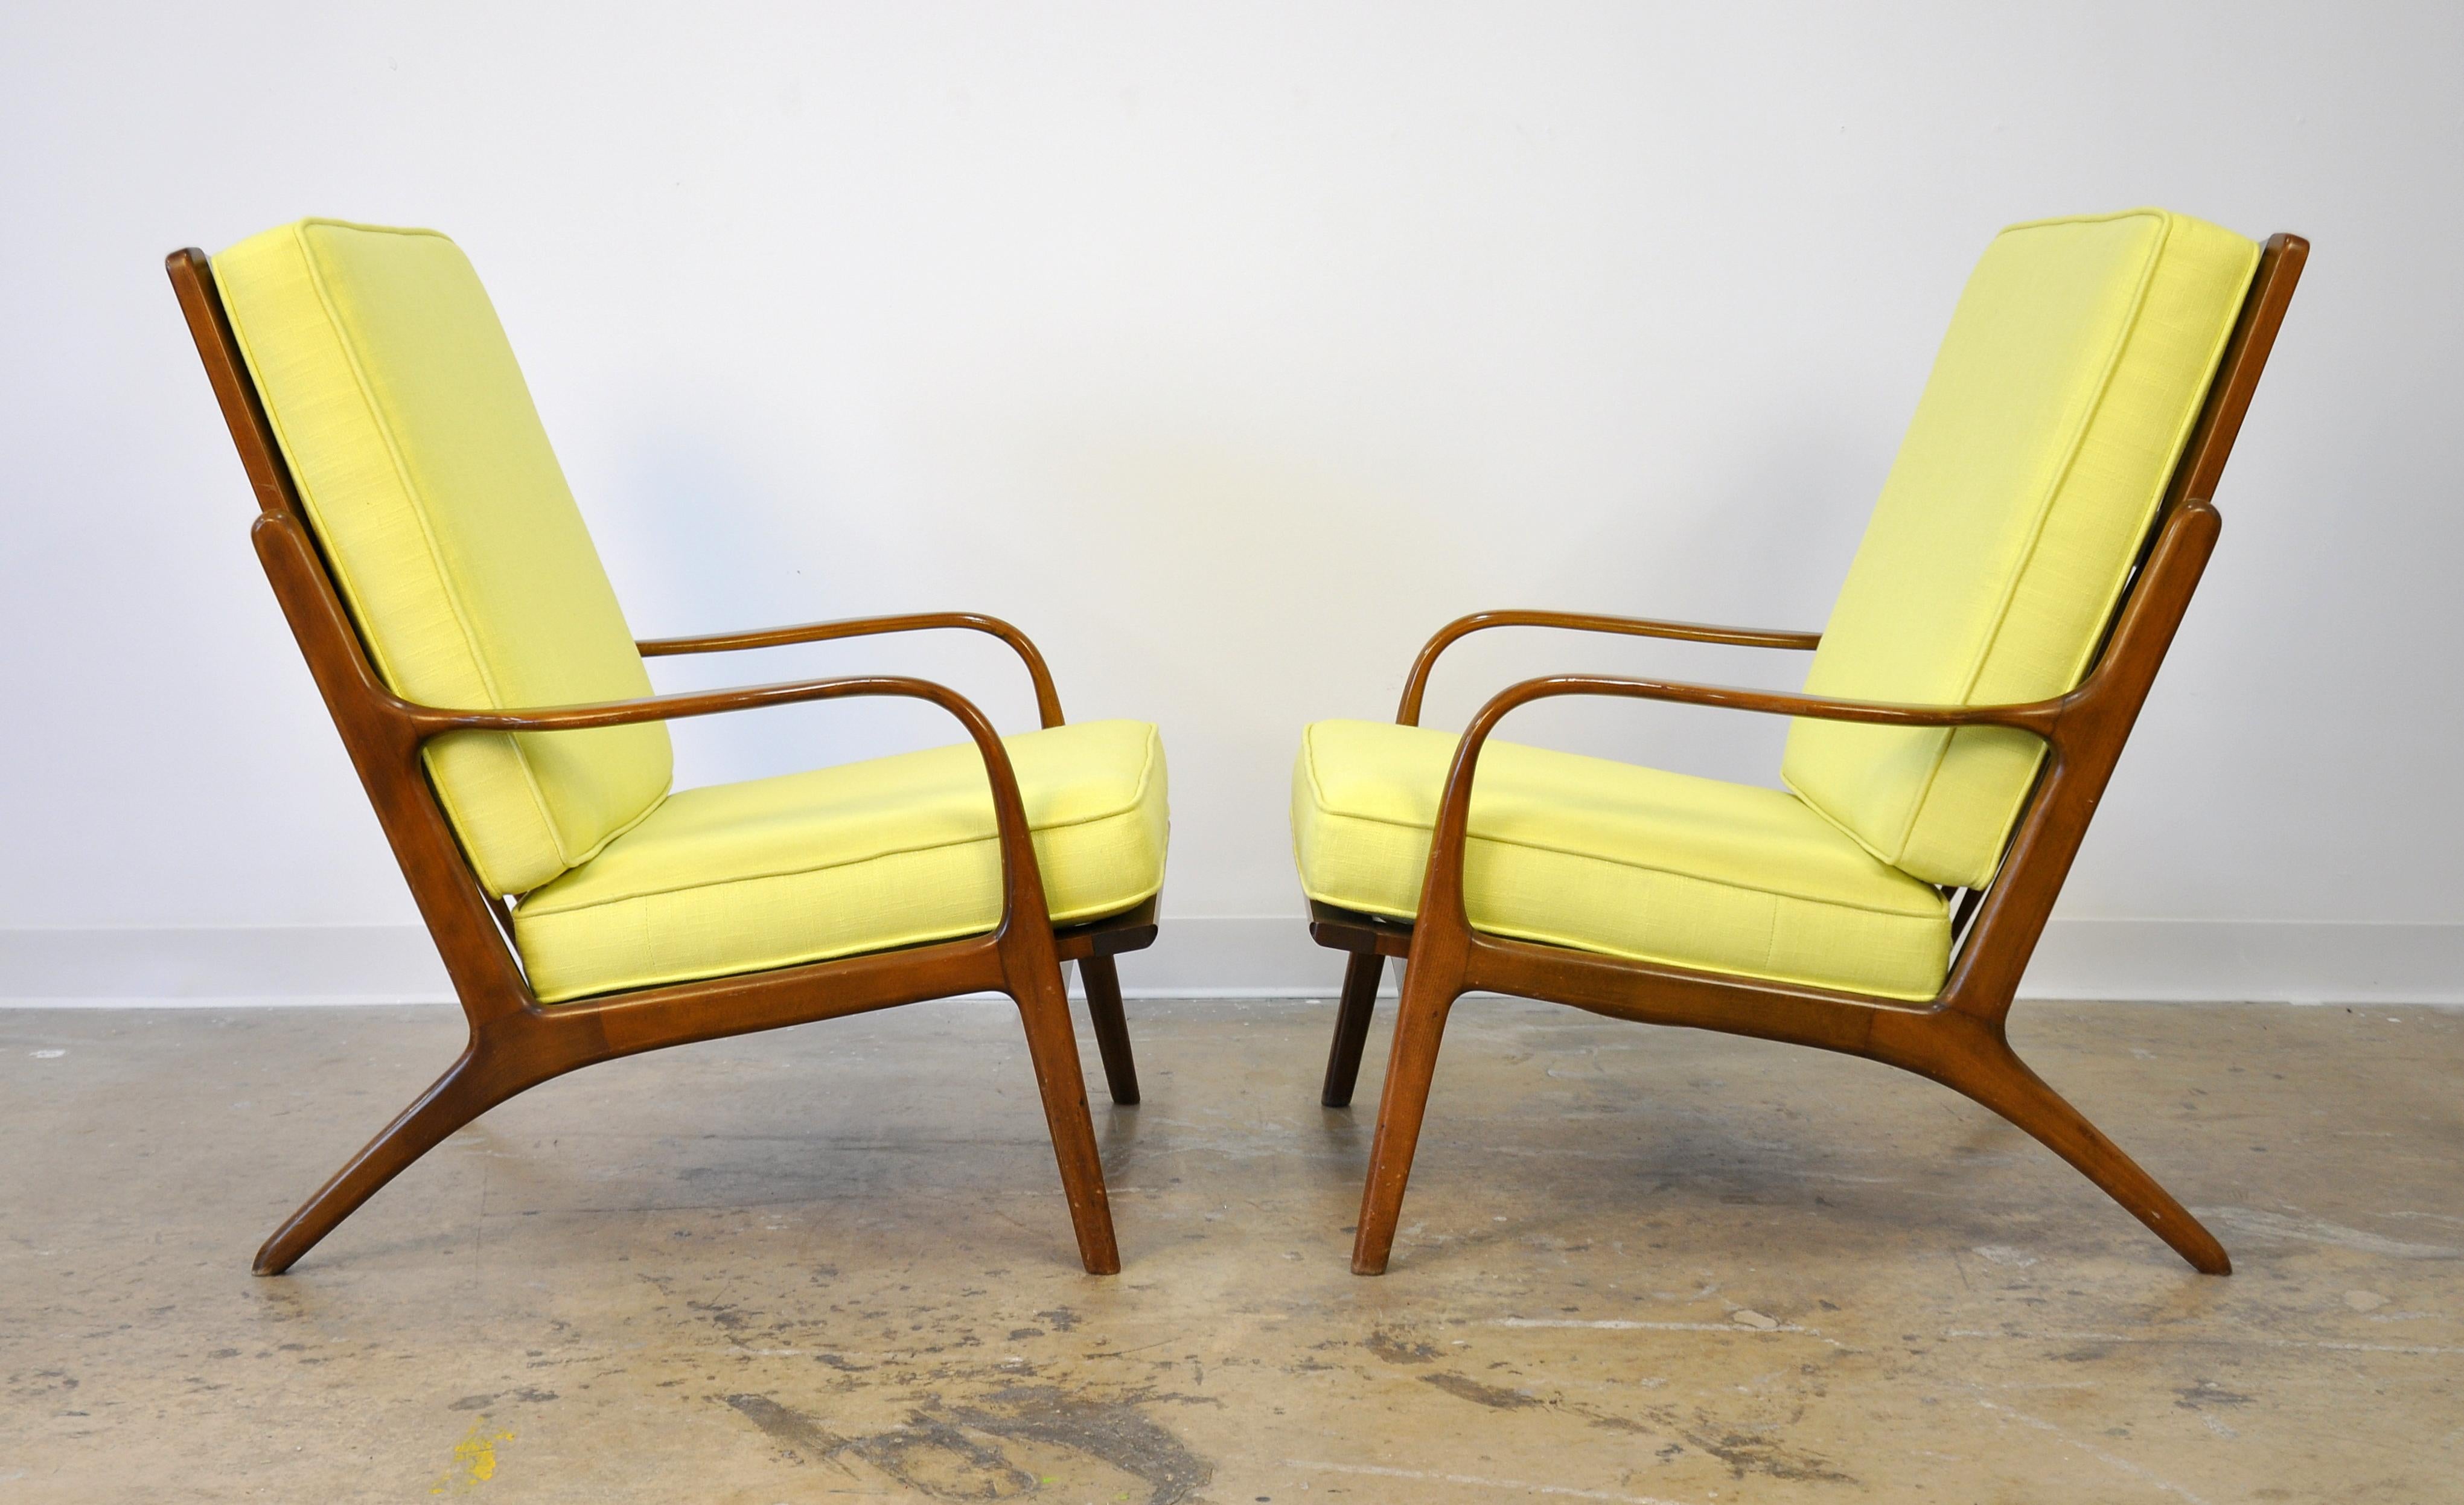 Mid-20th Century Pair of Danish Modern Yellow Lounge Chairs